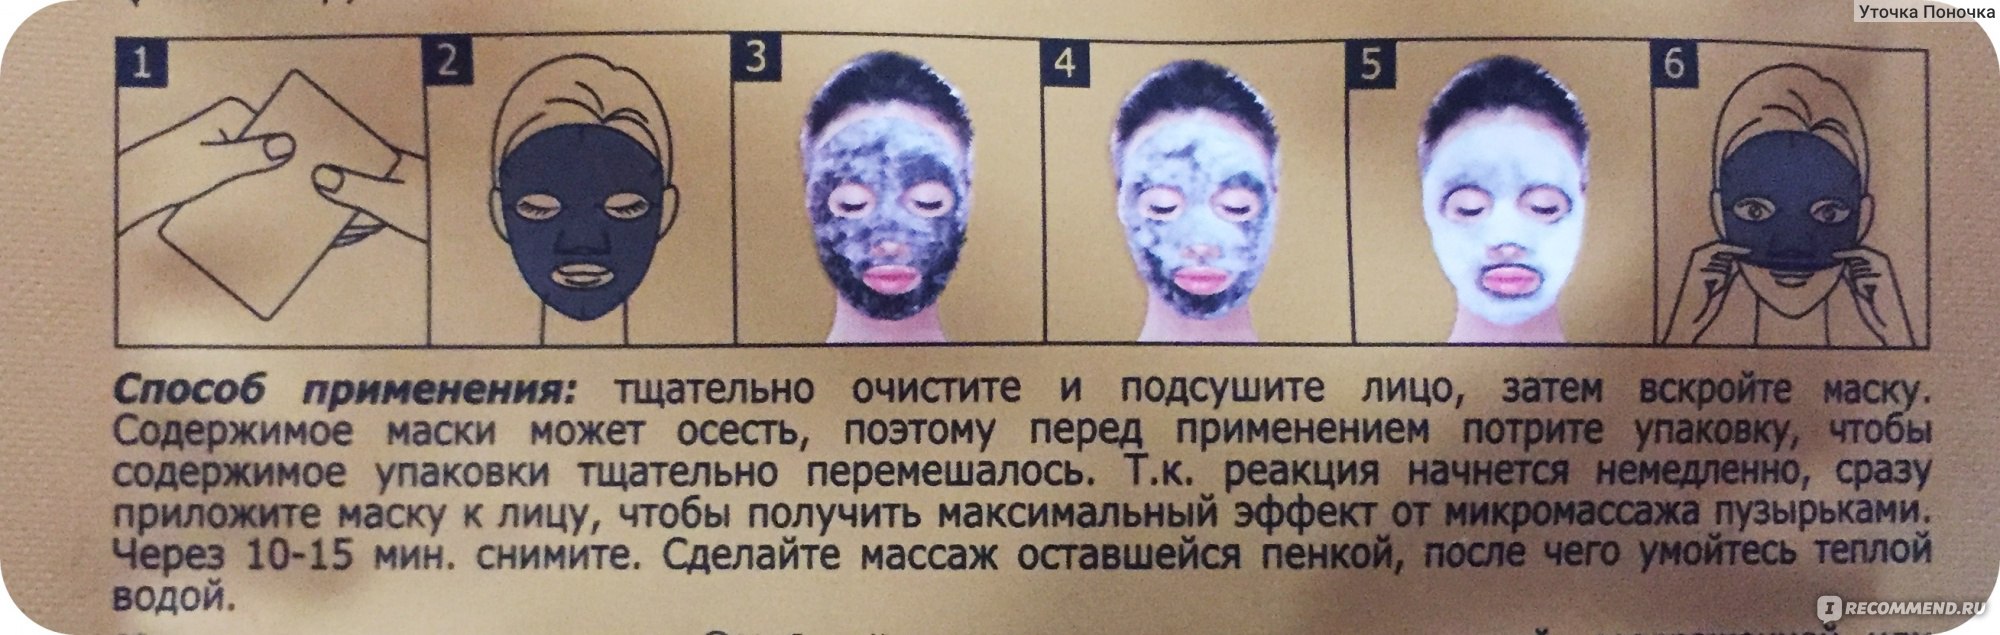 Смывать ли маску для лица после применения